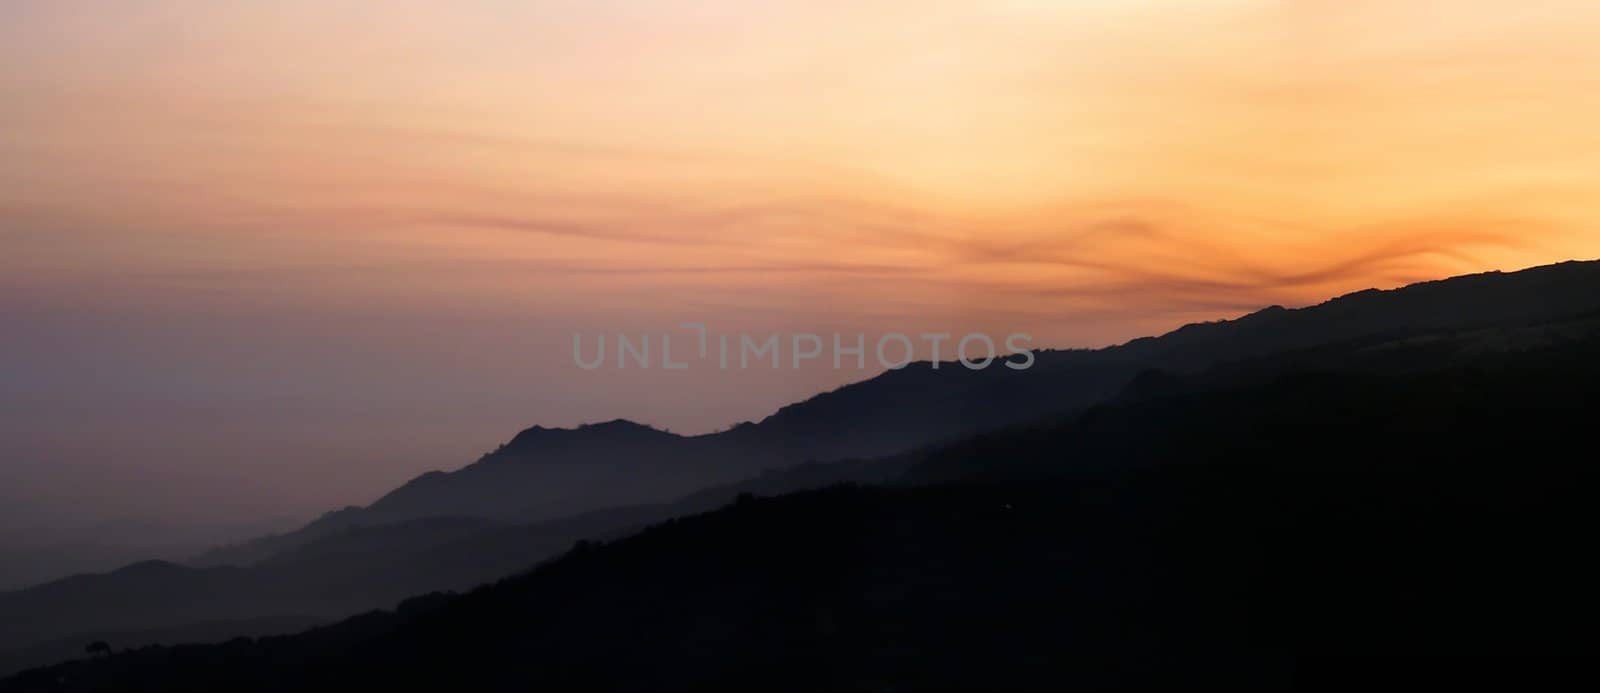 Hillside Sunset by hlehnerer